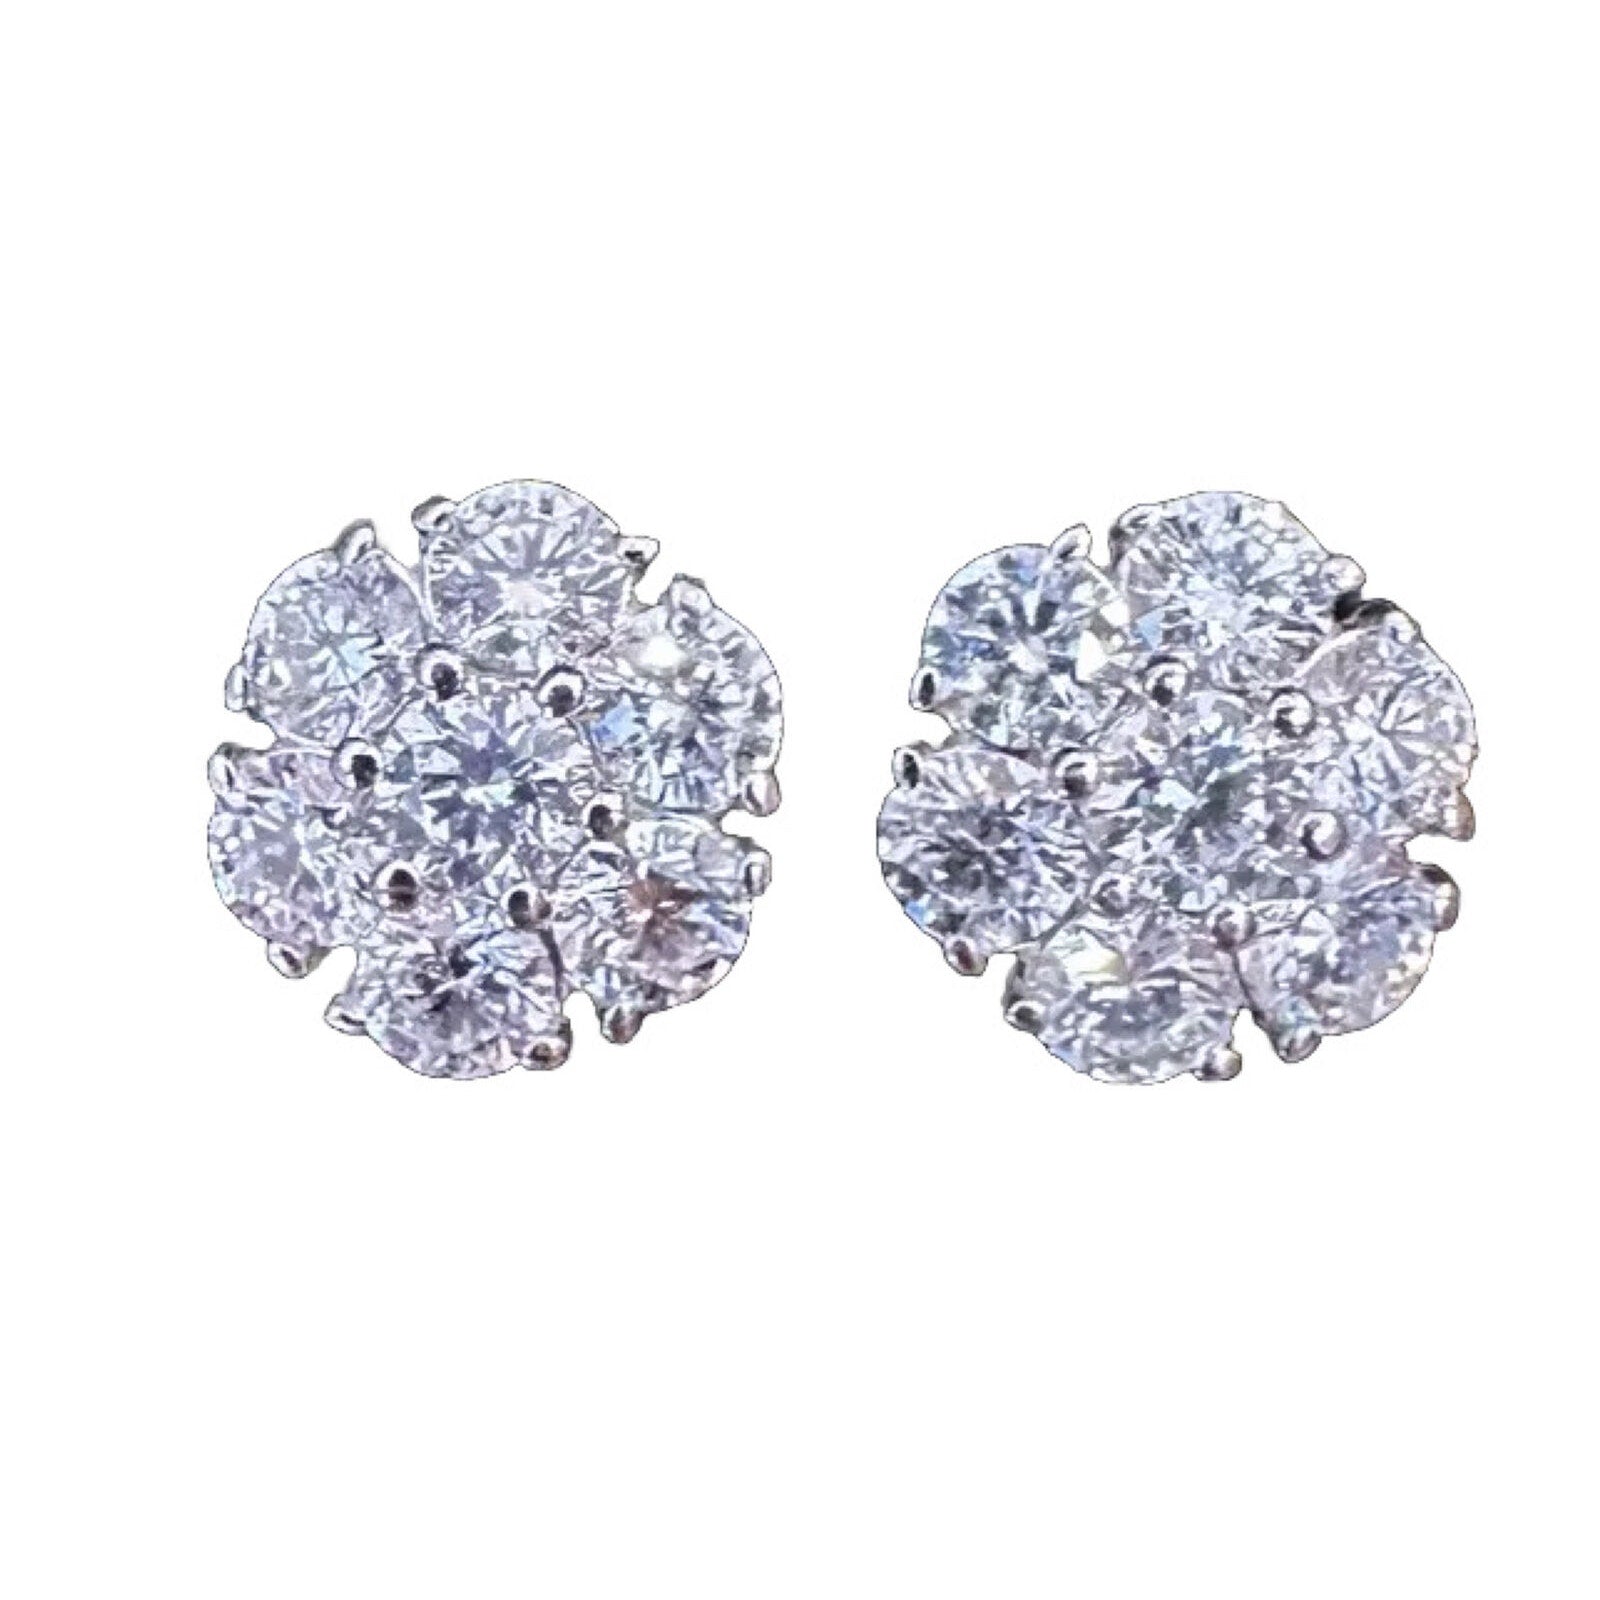 Diamond Floret Cluster Stud Earrings 3.10 cttw in 14k White Gold- HM2412B